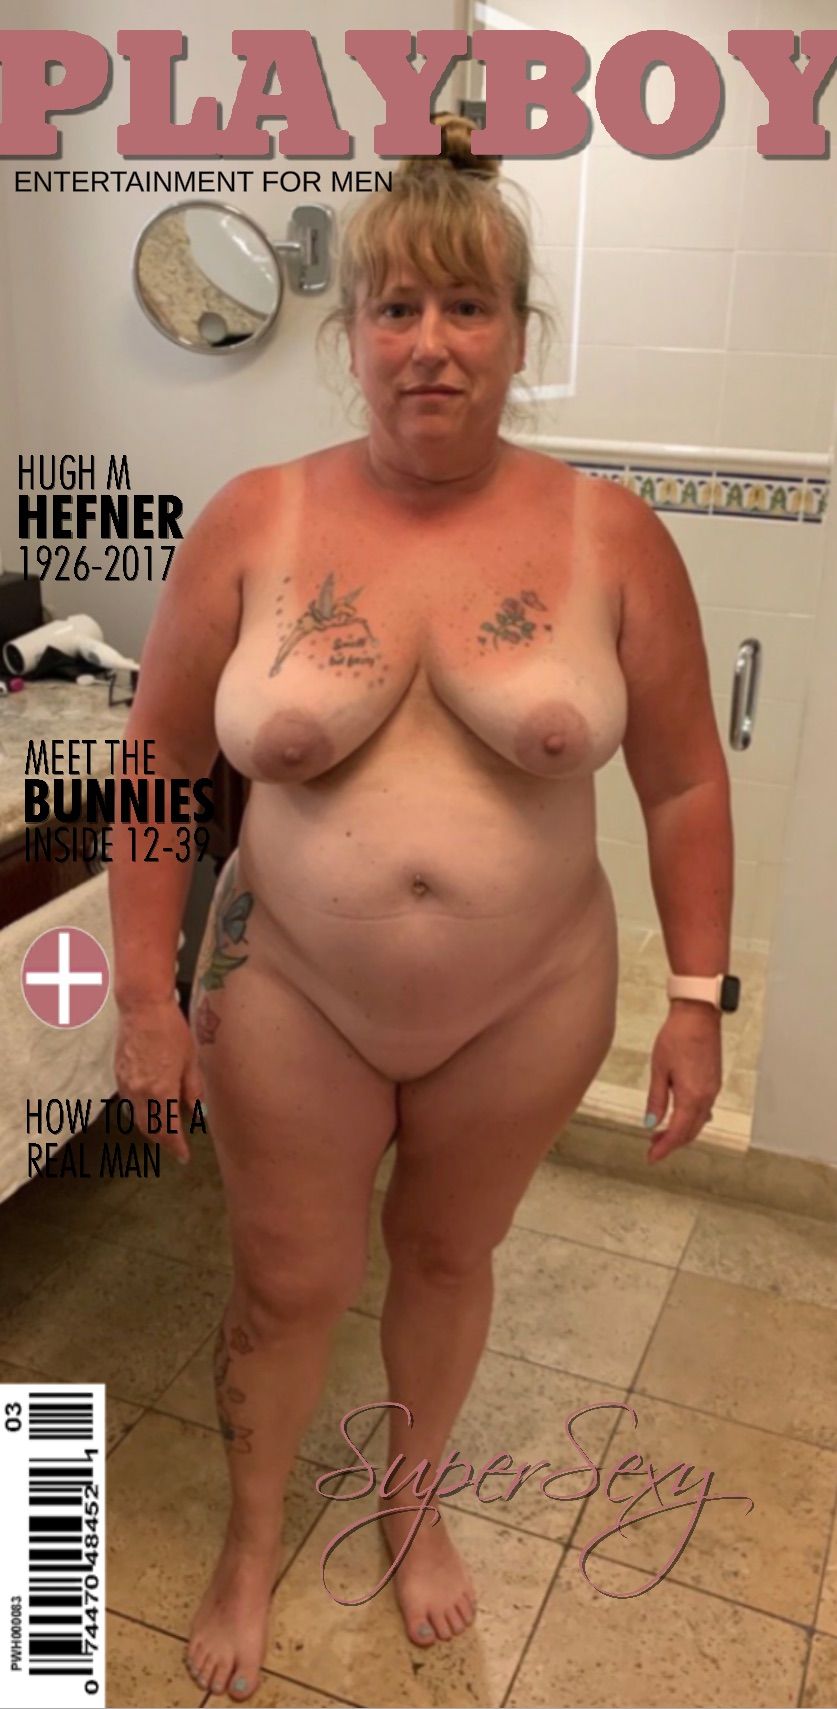 Slut on magazine covers